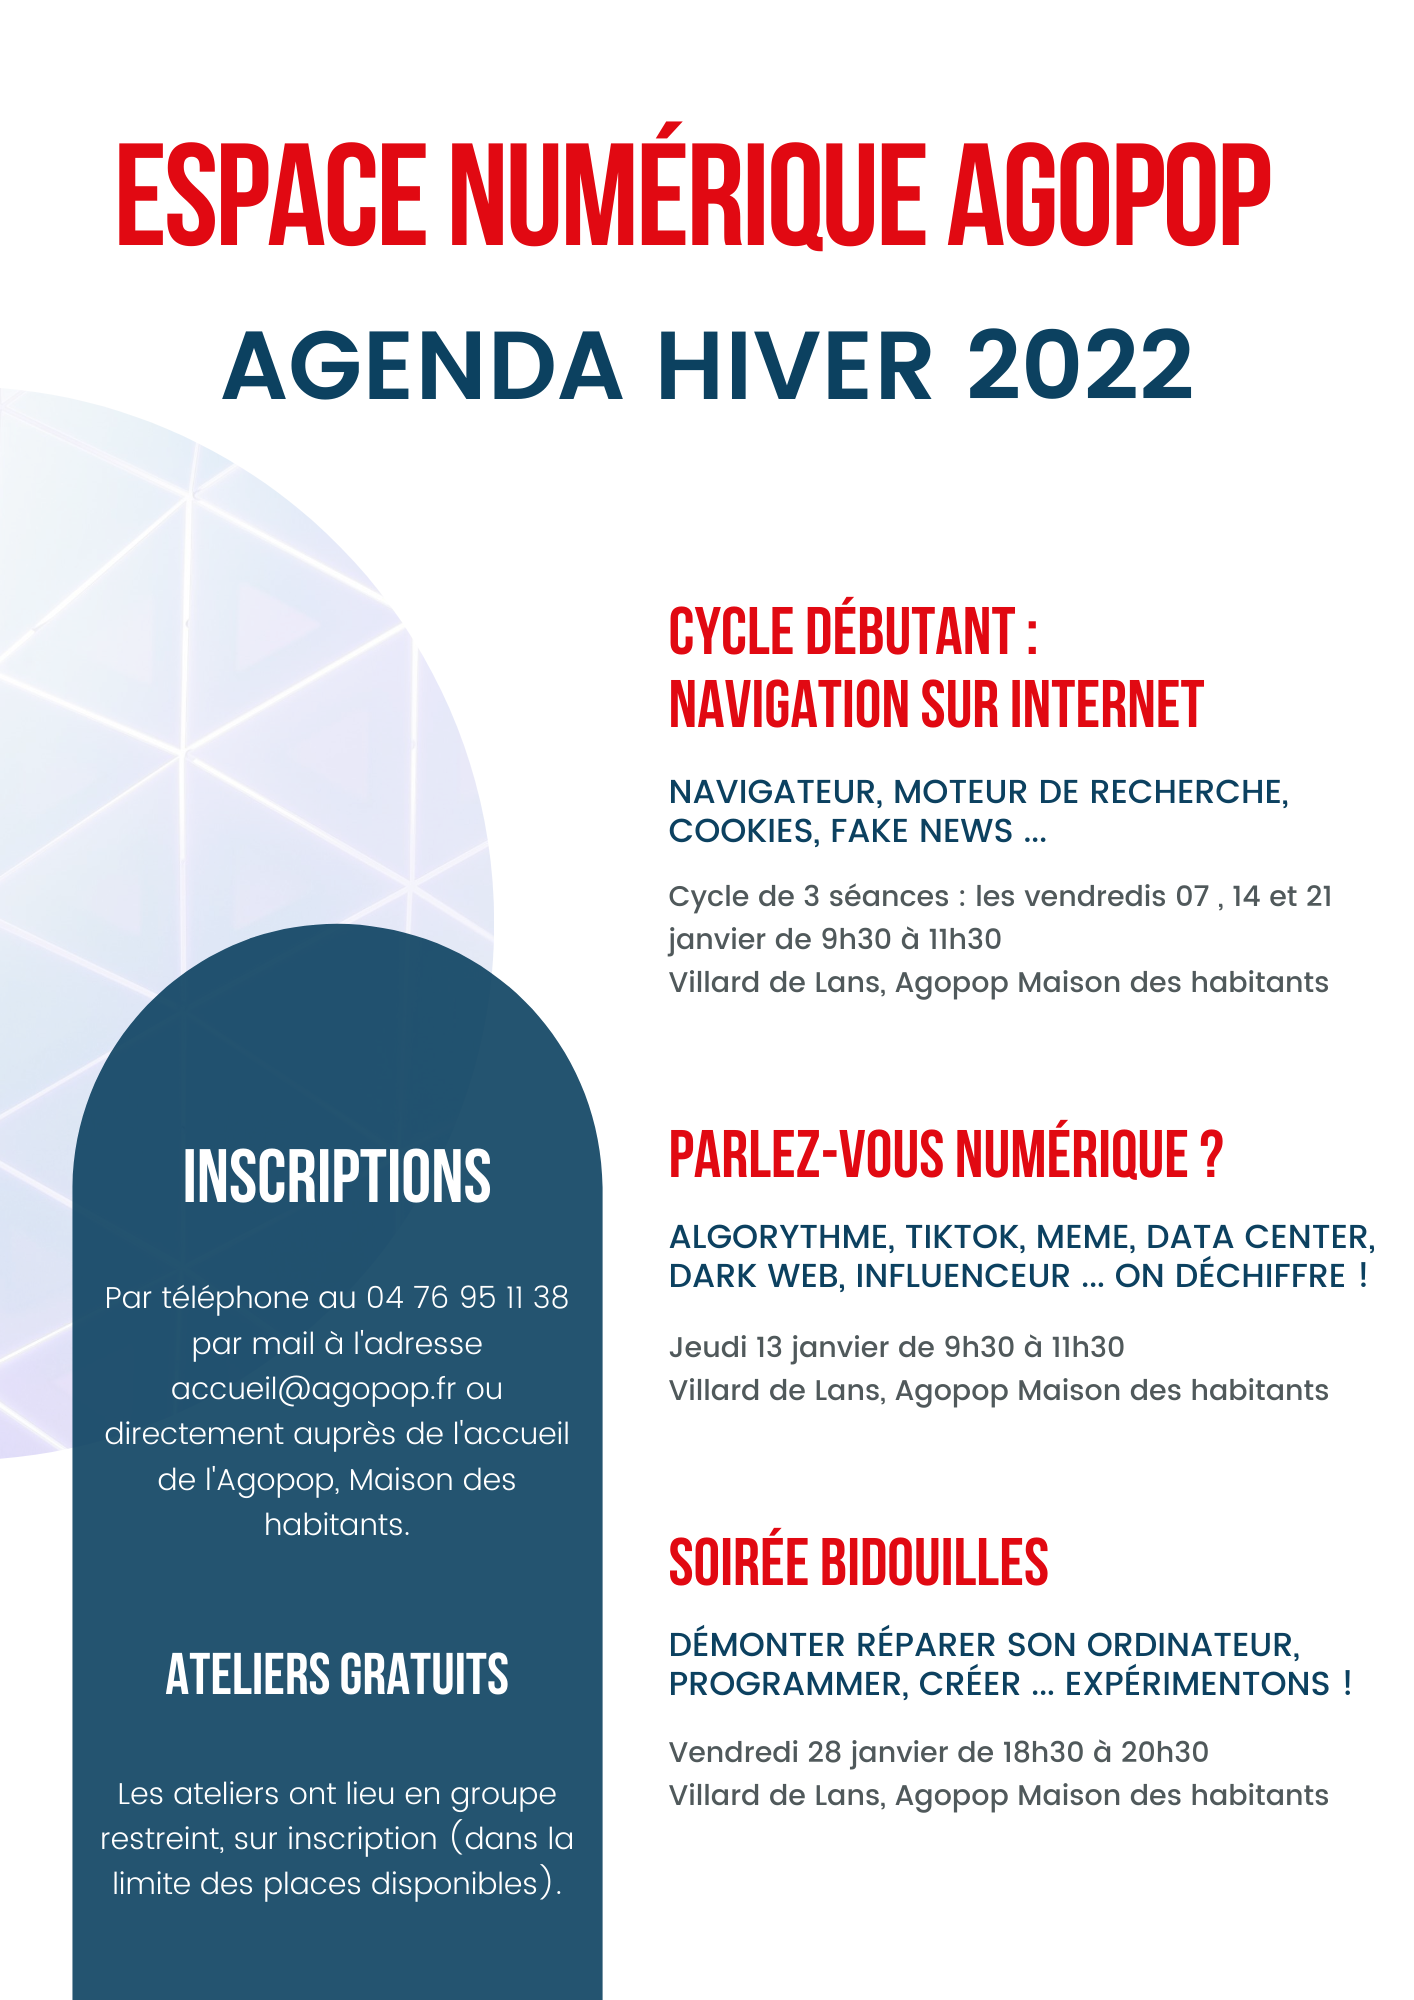 Espace Numérique : agenda de l'hiver 2022 - Agopop